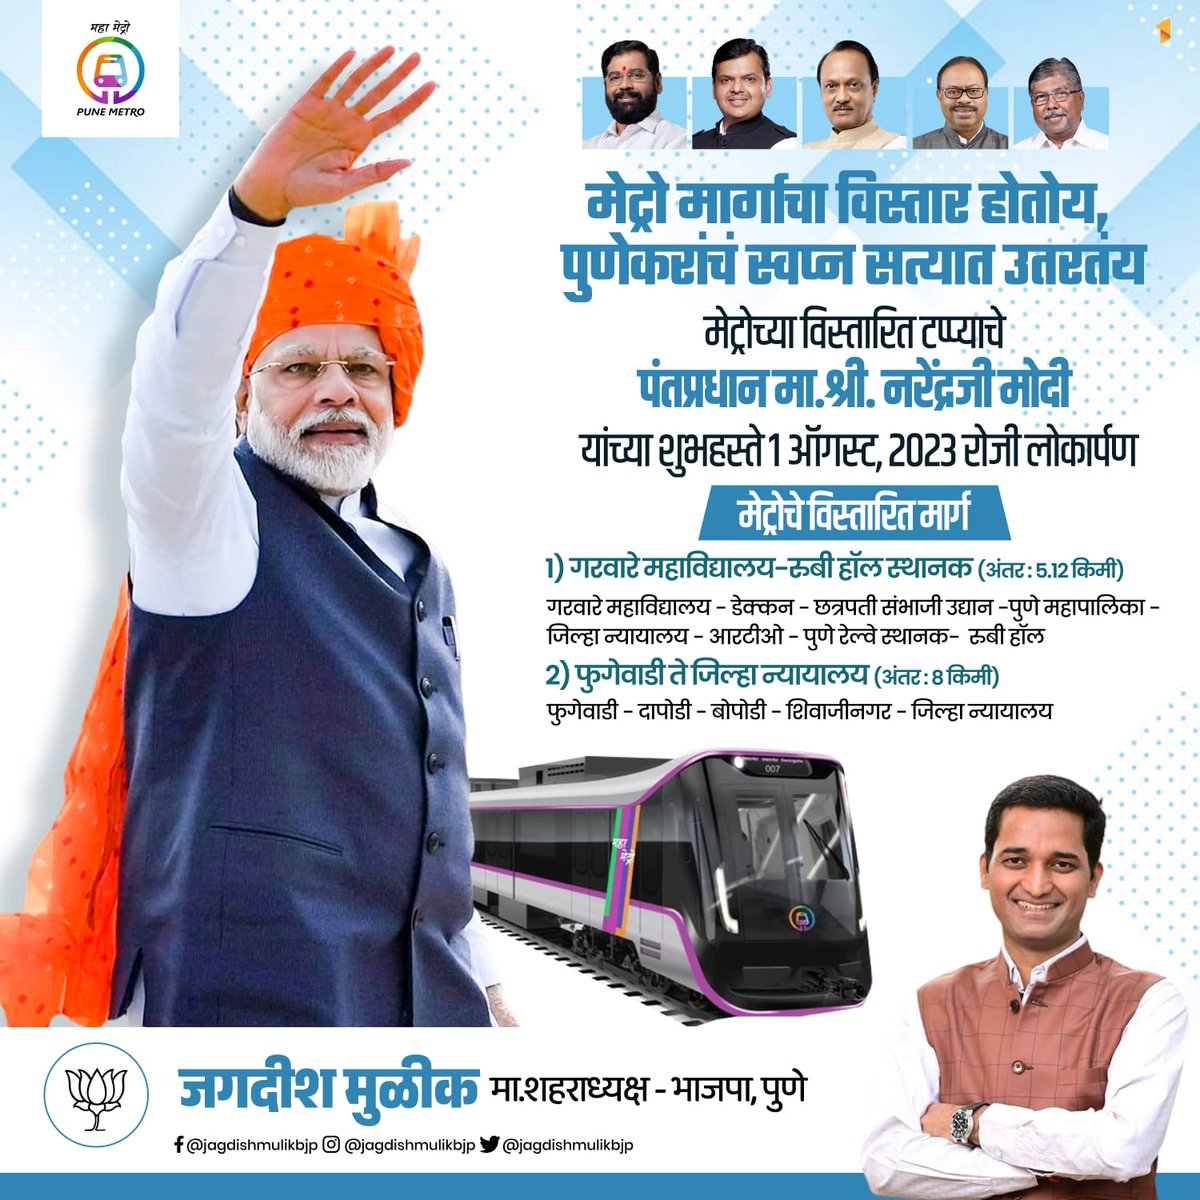 मेट्रो मार्गाचा विस्तार होतोय, पुणेकरांच स्वप्न सत्यात उतरतंय! 

#Pune #पुणे #Metro #मेट्रो
#PuneMetro #BJP4Pune #BJP4PMC

@narendramodi
@BJP4India
@Dev_Fadnavis
@cbawankule
@BJP4Maharashtra